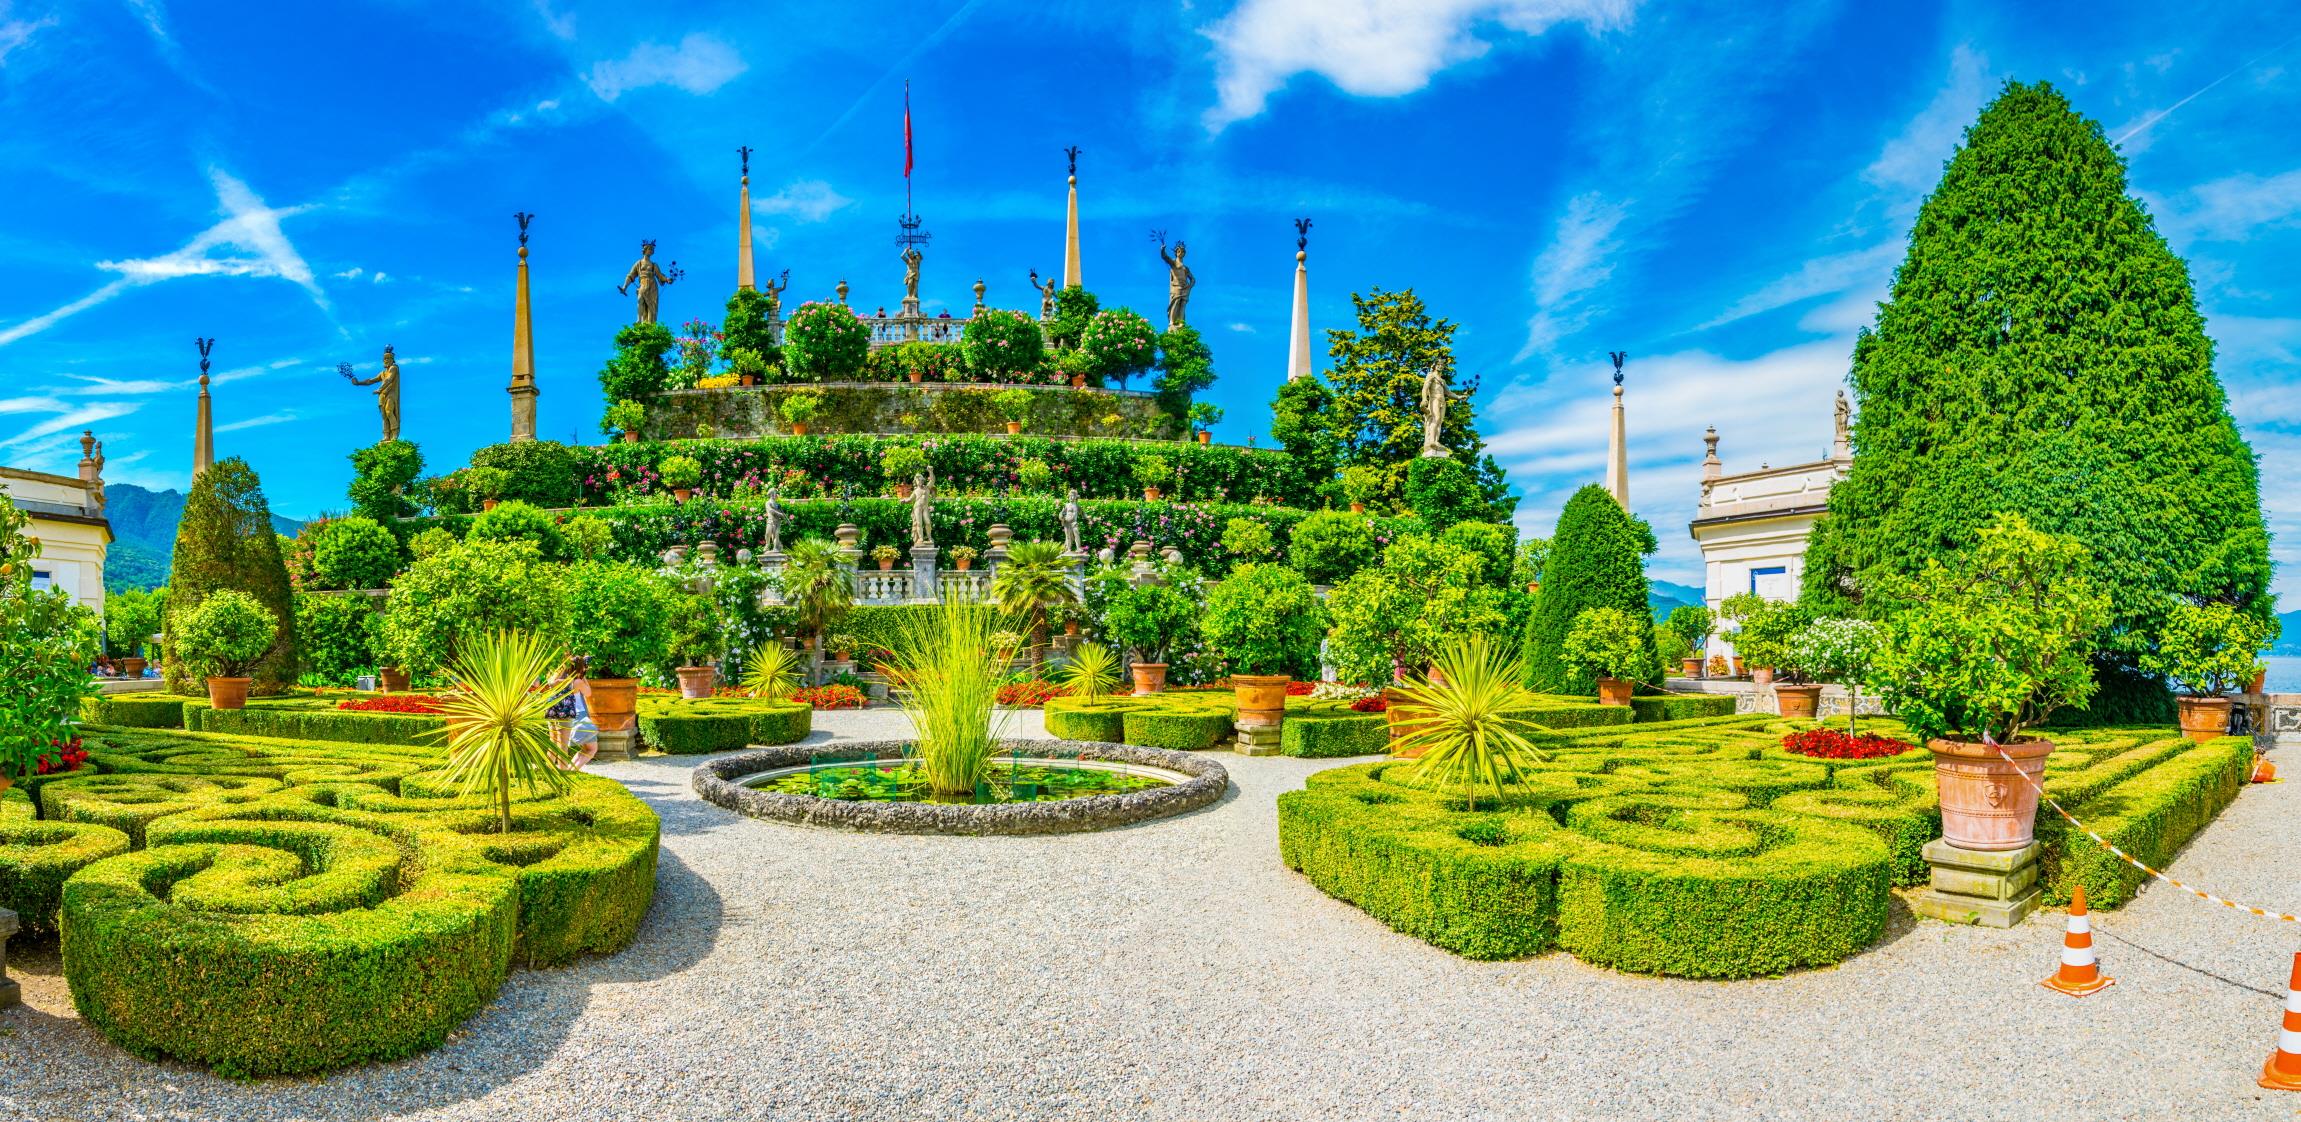 보로메오 궁전  Borromeo Palace and Garden